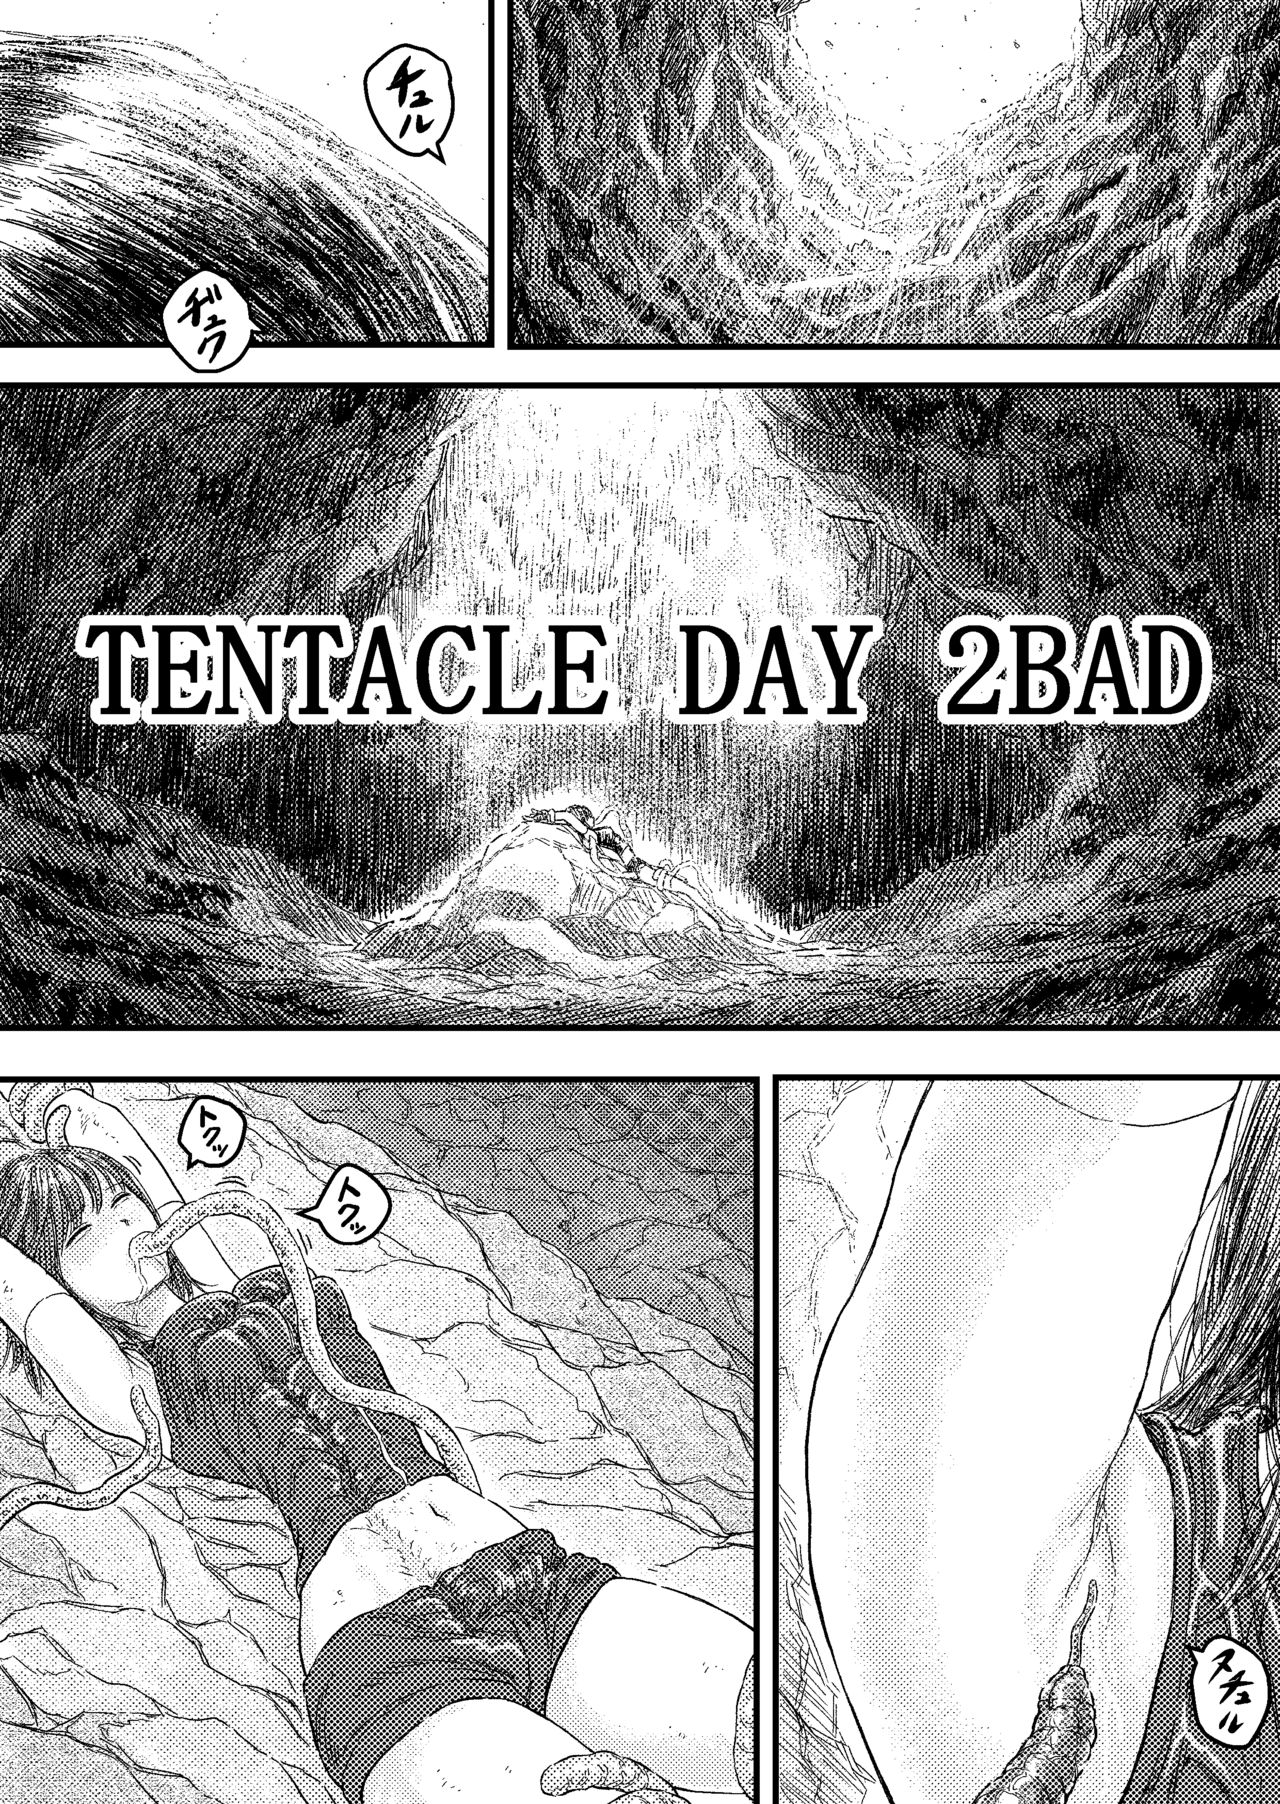 [ブルー・パーカッション (ボーン)] TENTACLE DAY 2BAD 【最恐触手による最悪の責めに悶え狂う少女の悪夢】